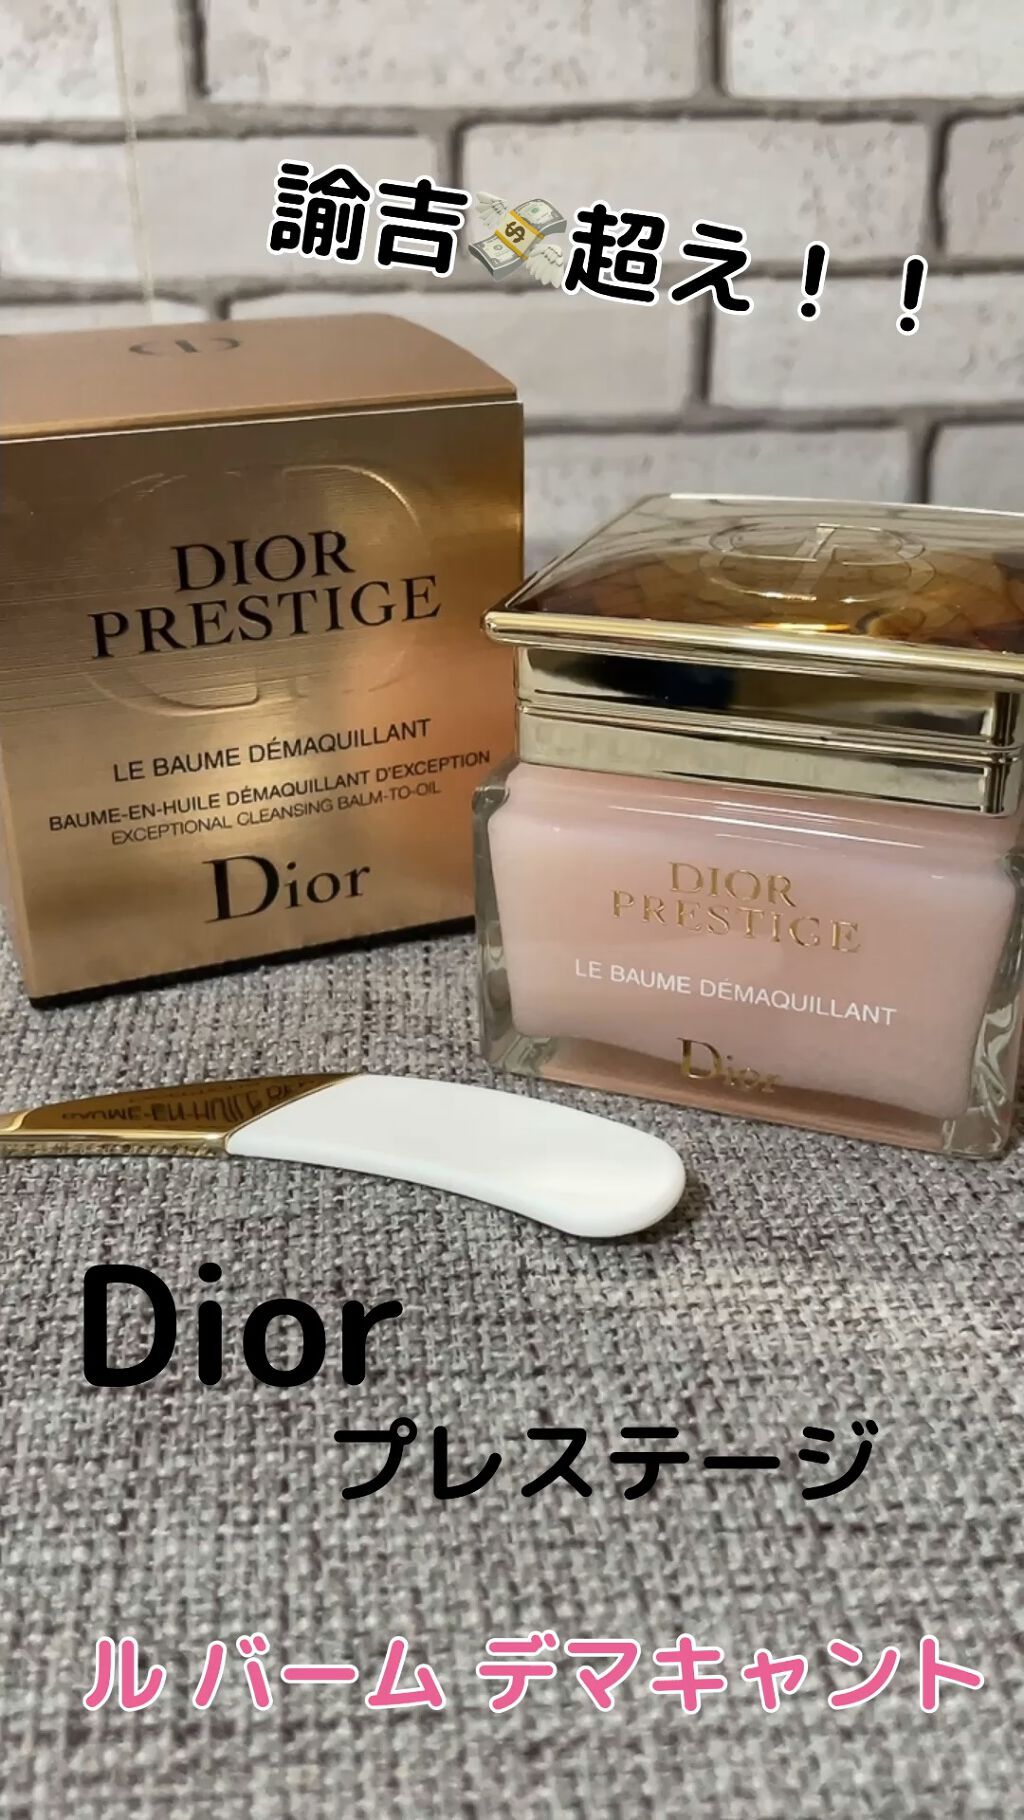 独創的 Dior クレンジング プレステージ ル バーム デマキヤント